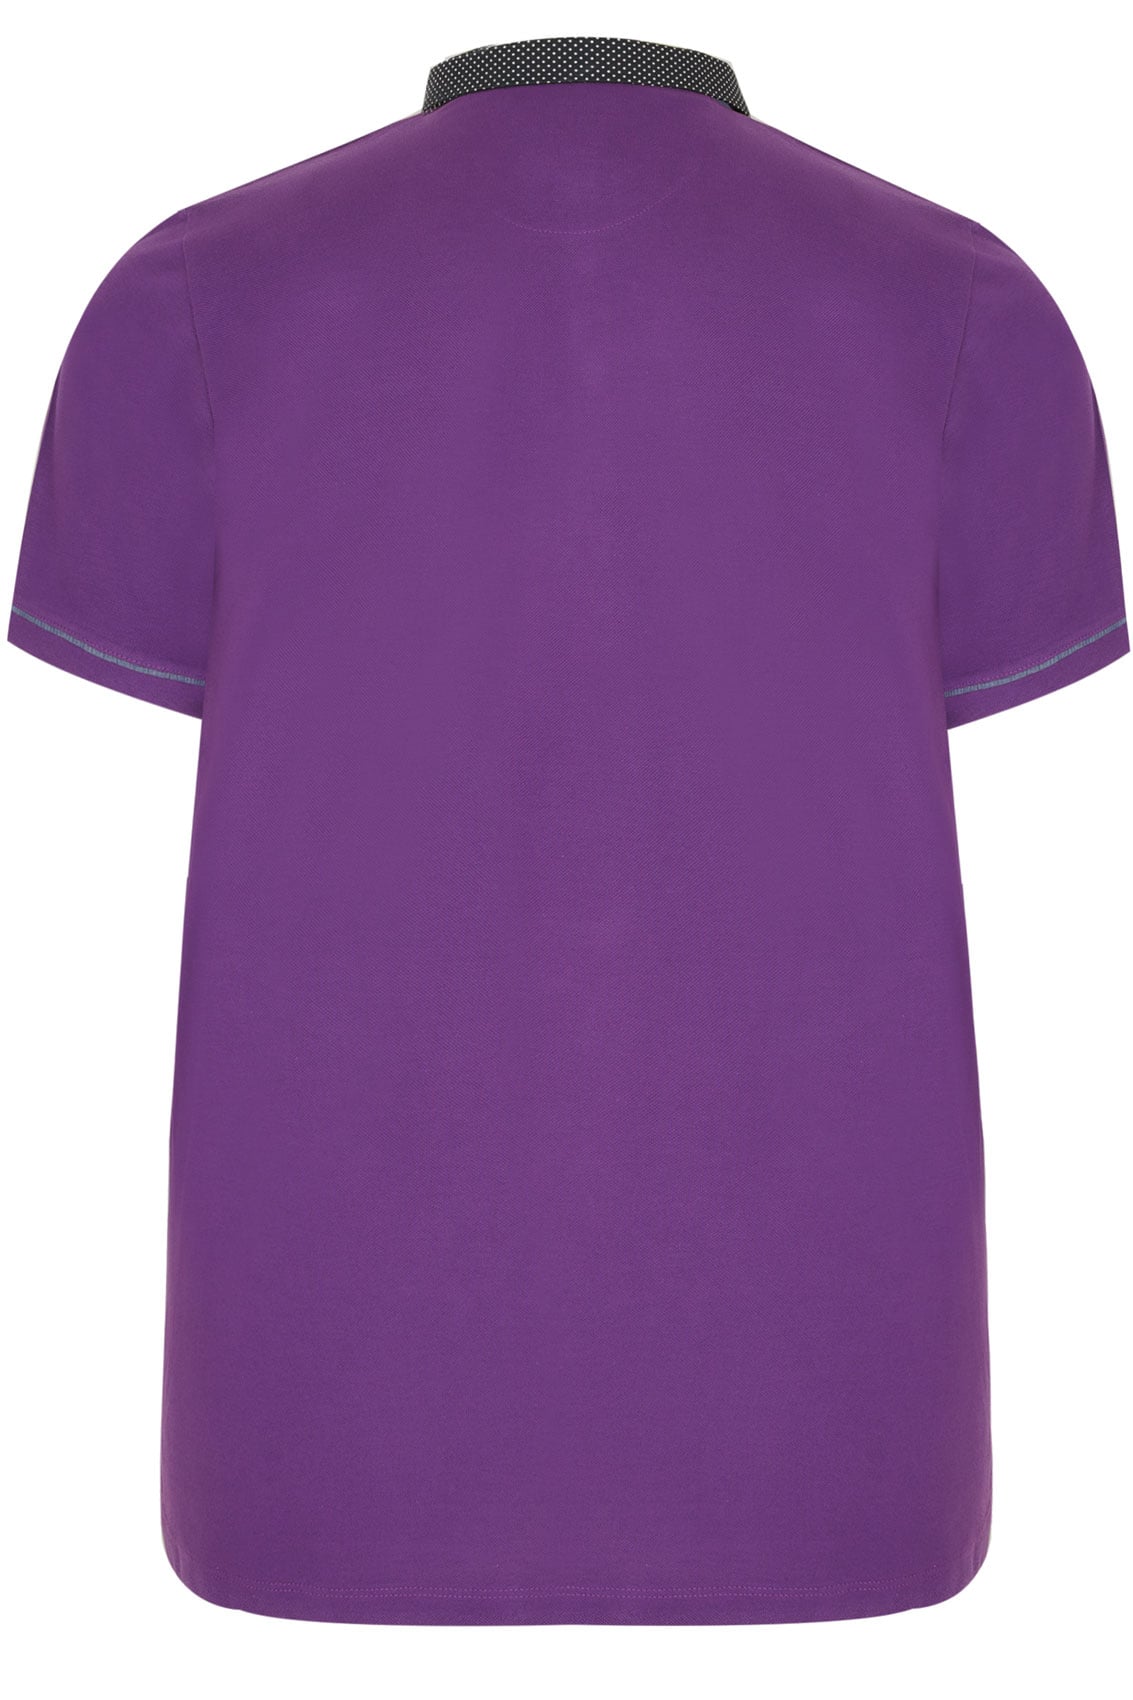 Purple Polo Shirt Clip Art